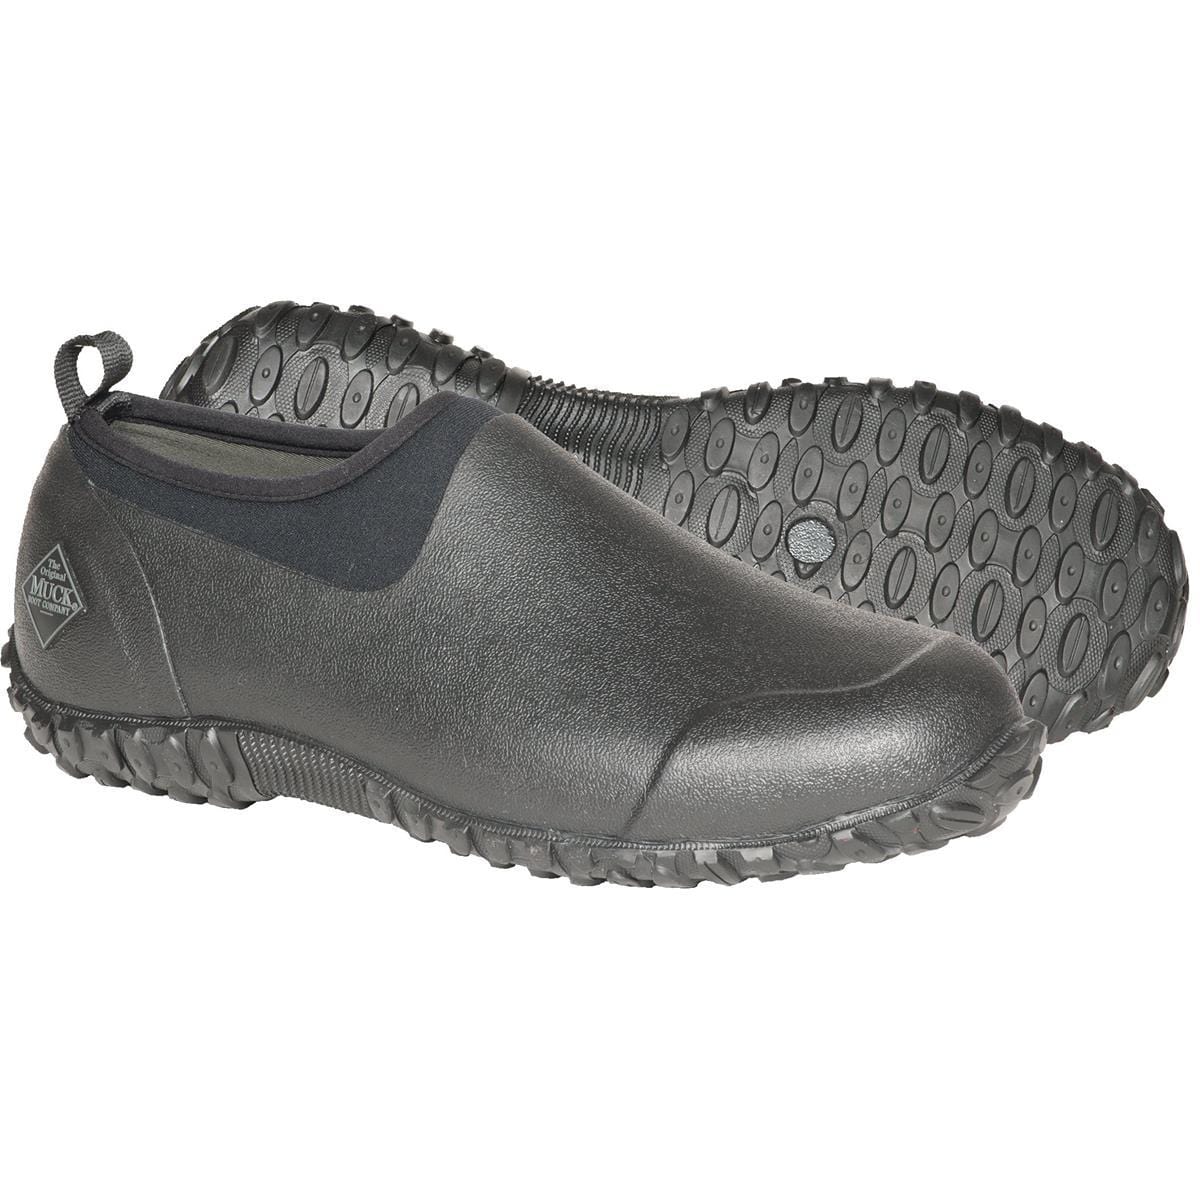 MUCK® Muckster II Men's Waterproof Shoes